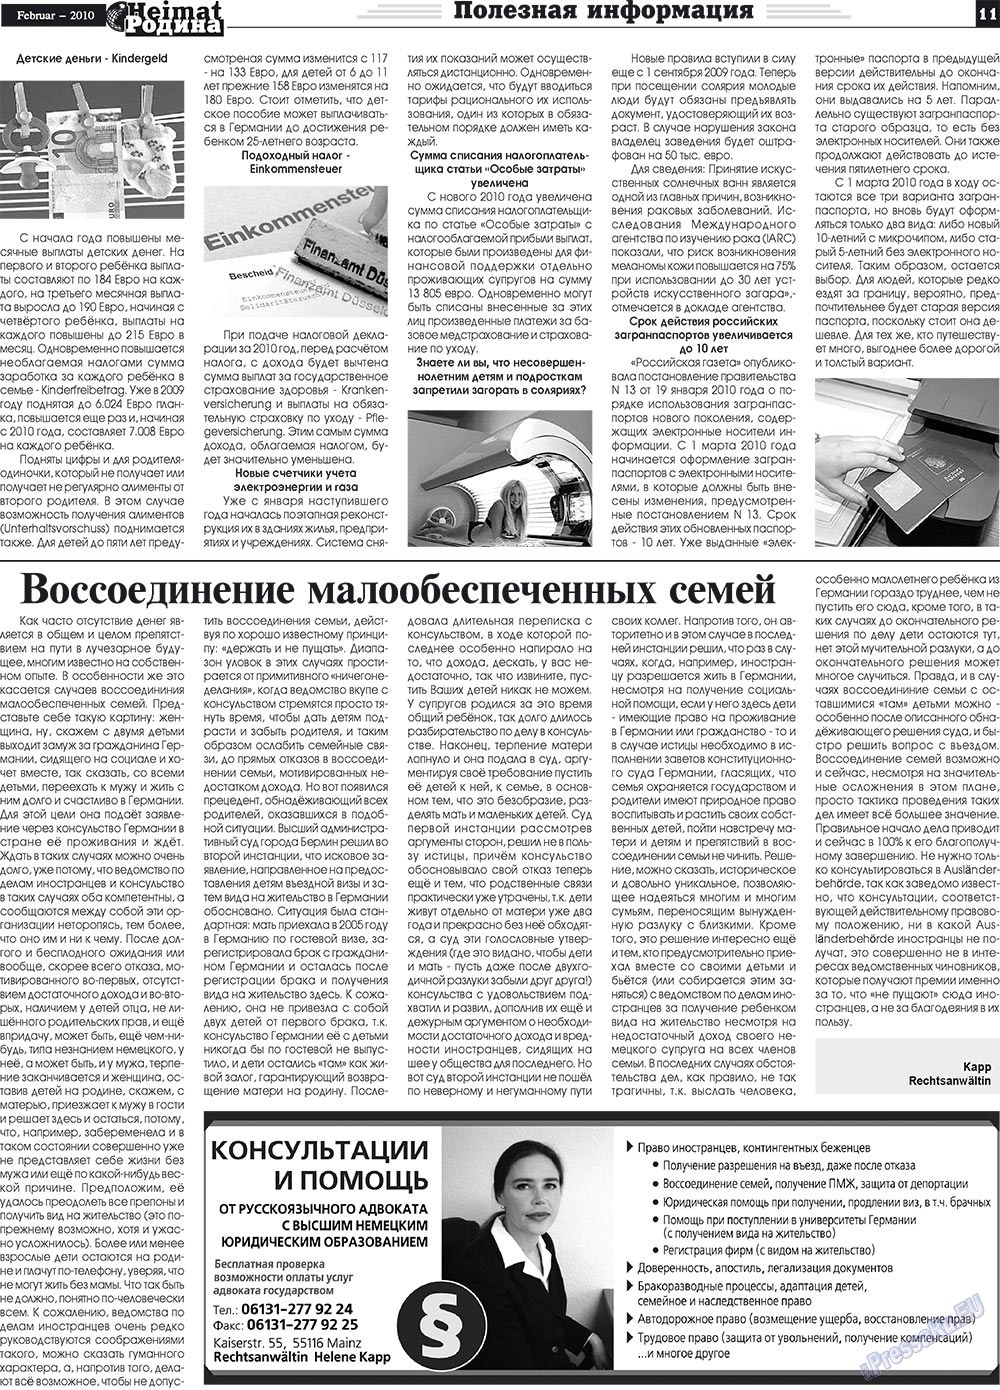 Heimat-Родина (газета). 2010 год, номер 2, стр. 11